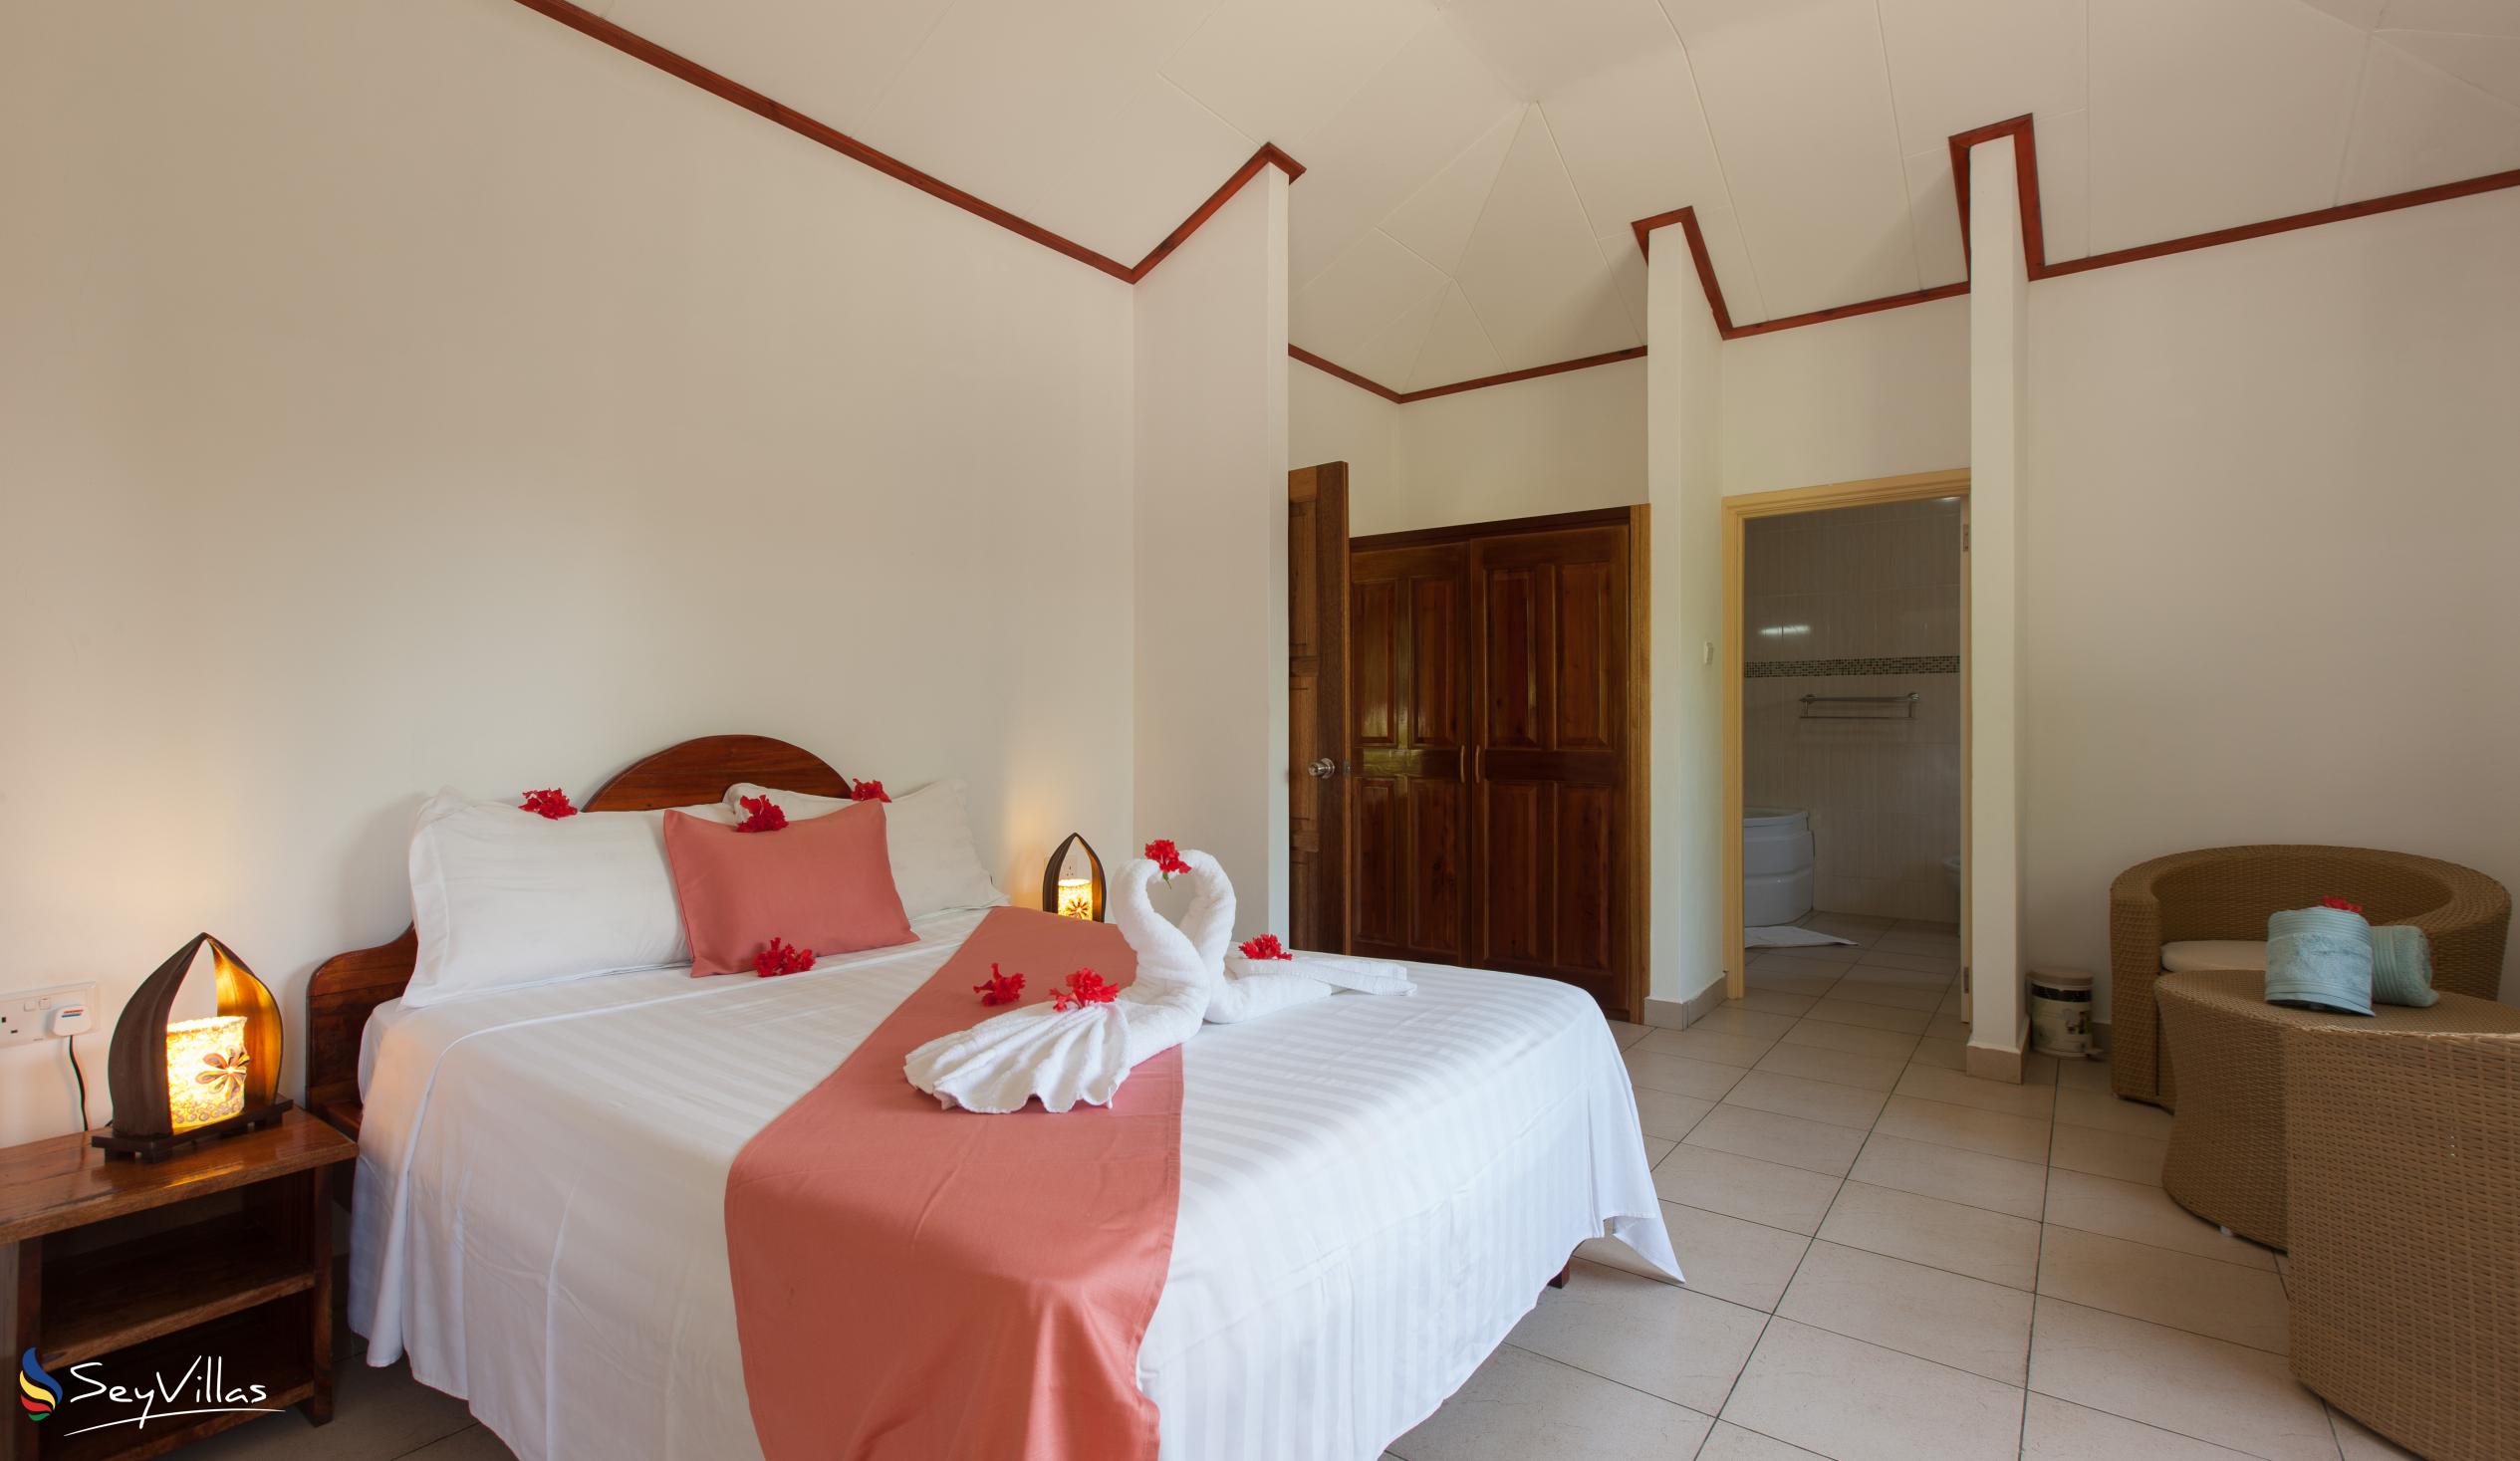 Foto 17: Hostellerie La Digue - Bungalow con 3 camere da letto - La Digue (Seychelles)